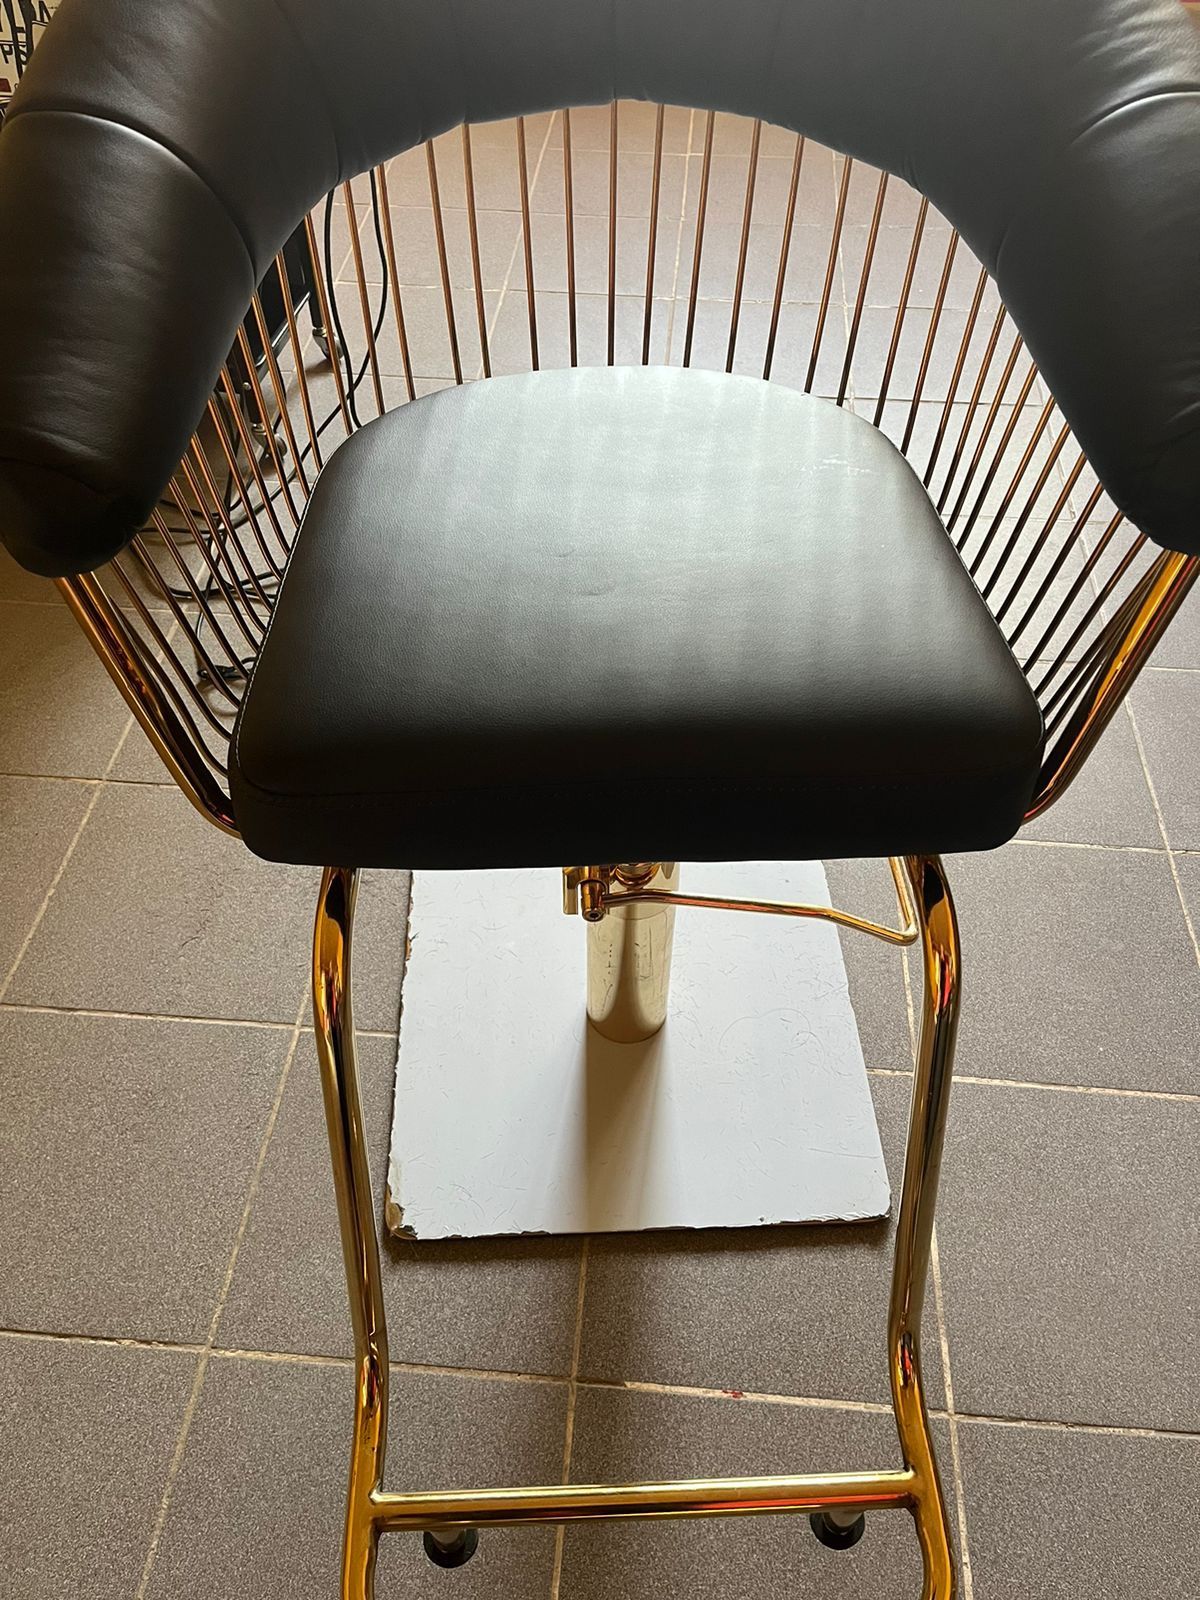 Парикмахерское кресло  в идеальном состоянии.